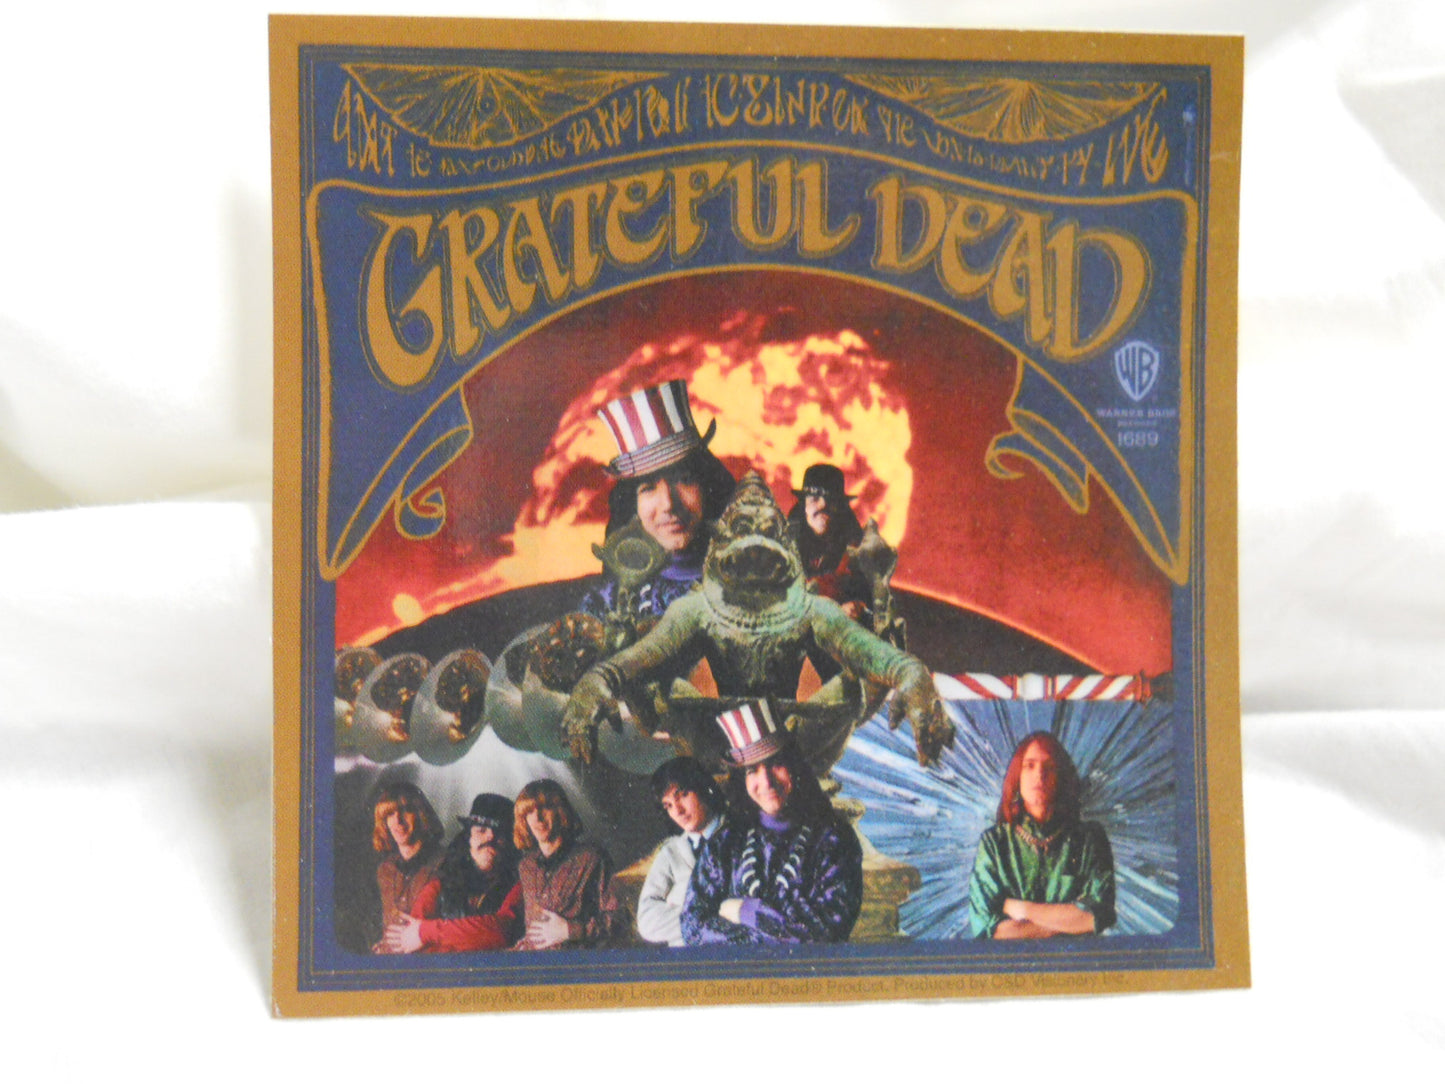 Grateful Dead 1968 Sticker - HalfMoonMusic